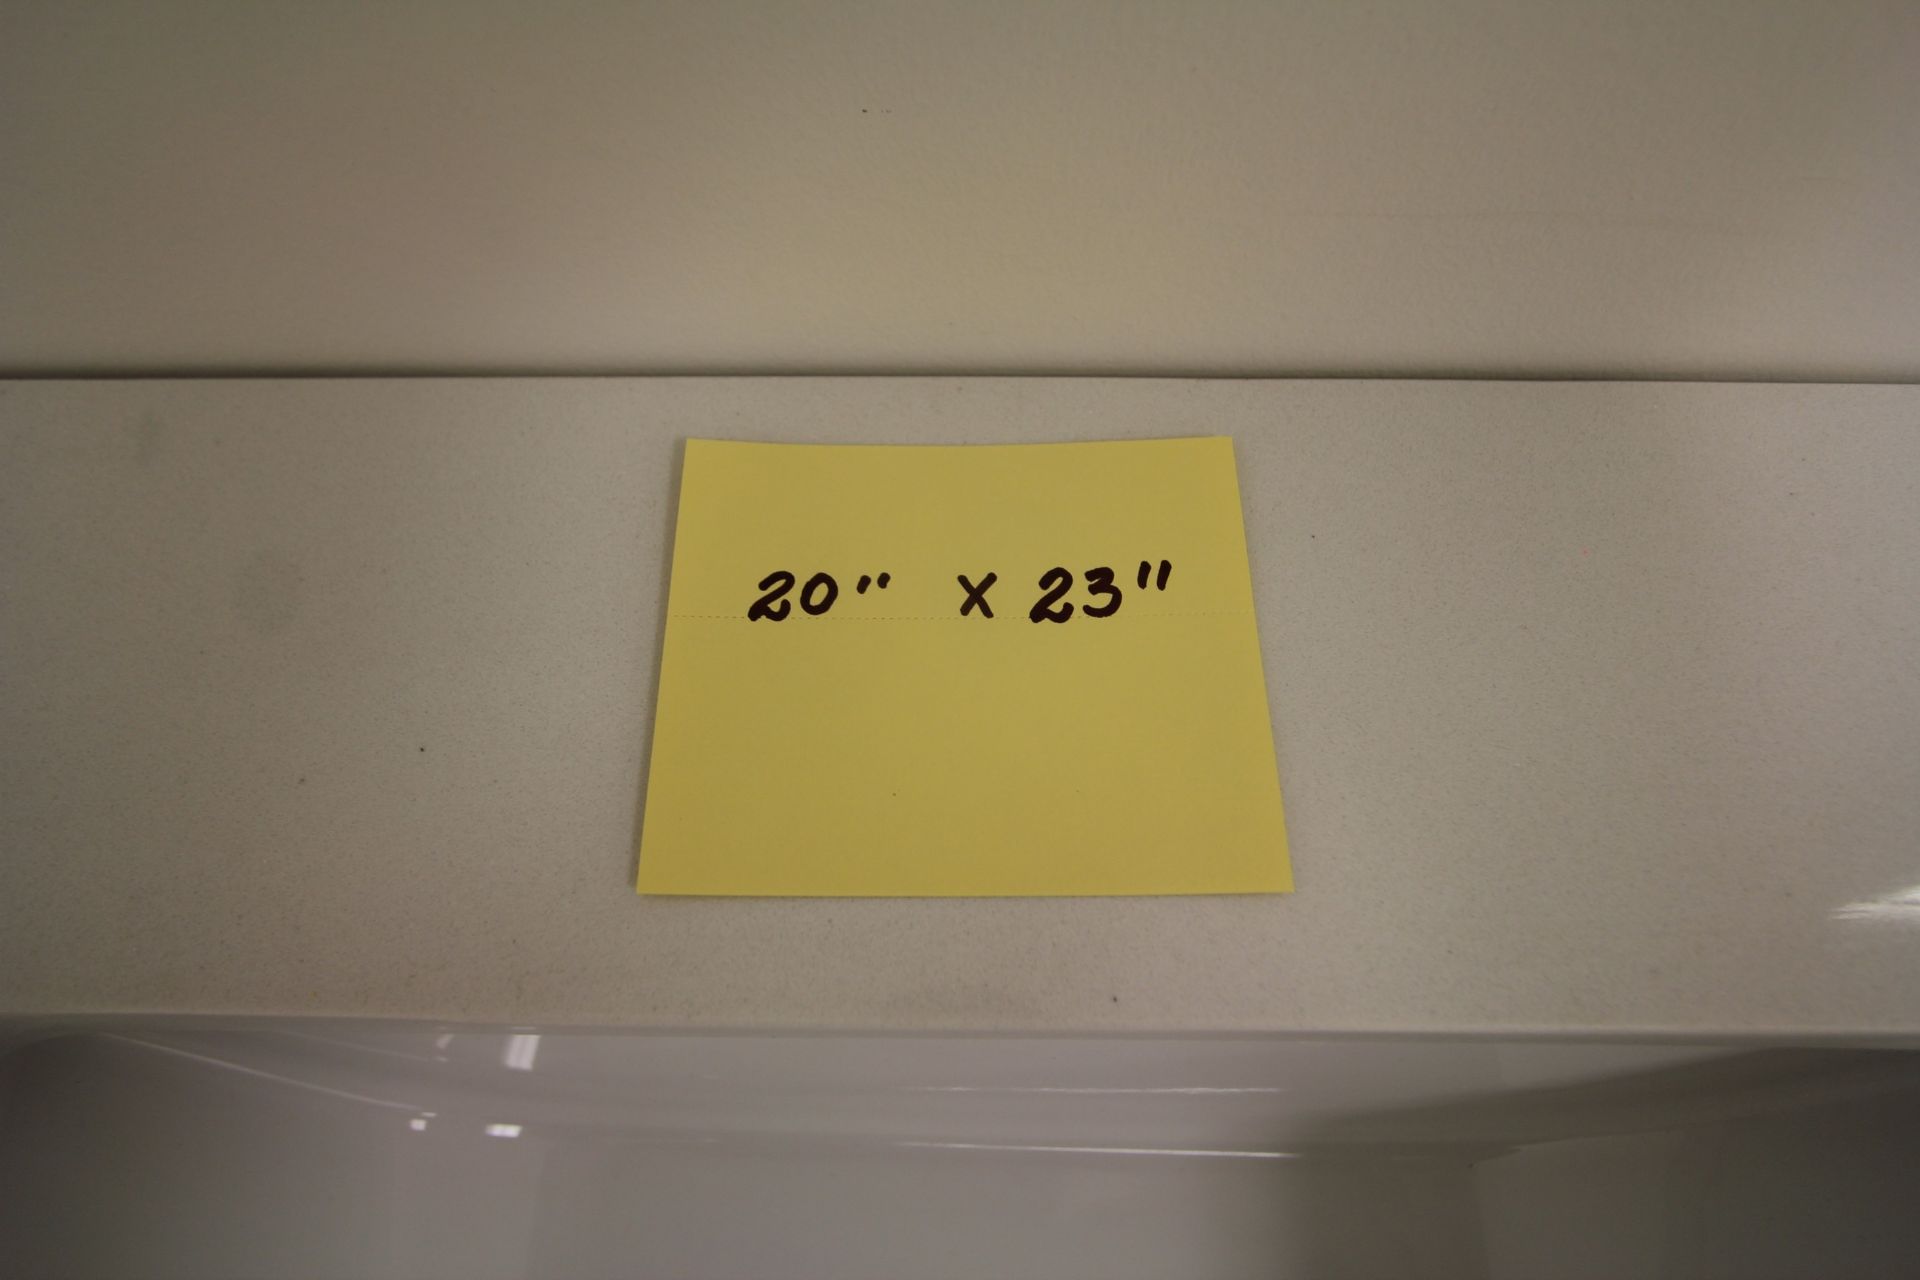 SHOWROOM DISPLAY BATHROOM VANITY W/ SINK, CUPBOARDS, 20" X 23" - Image 3 of 3